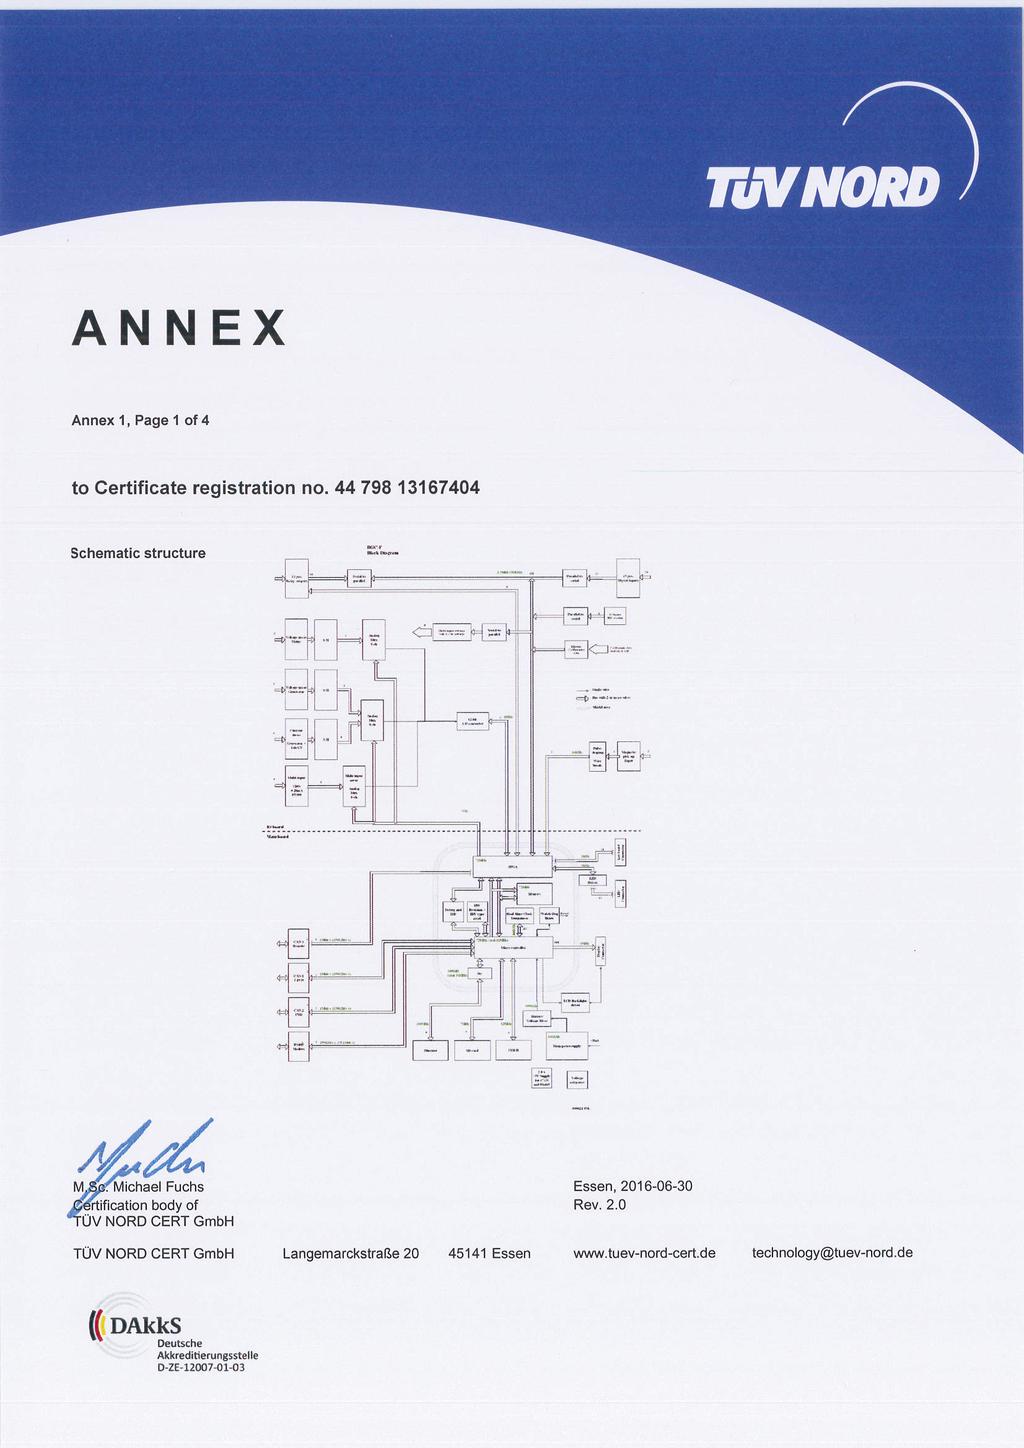 ANNEX Annex 1, Page 1 of 4 Schematic structure...a, gr.o. lr Idly 4$ Michael Fuchs TON/ NORD CERT GmbH Langemarckstrage 20 45141 Essen www.